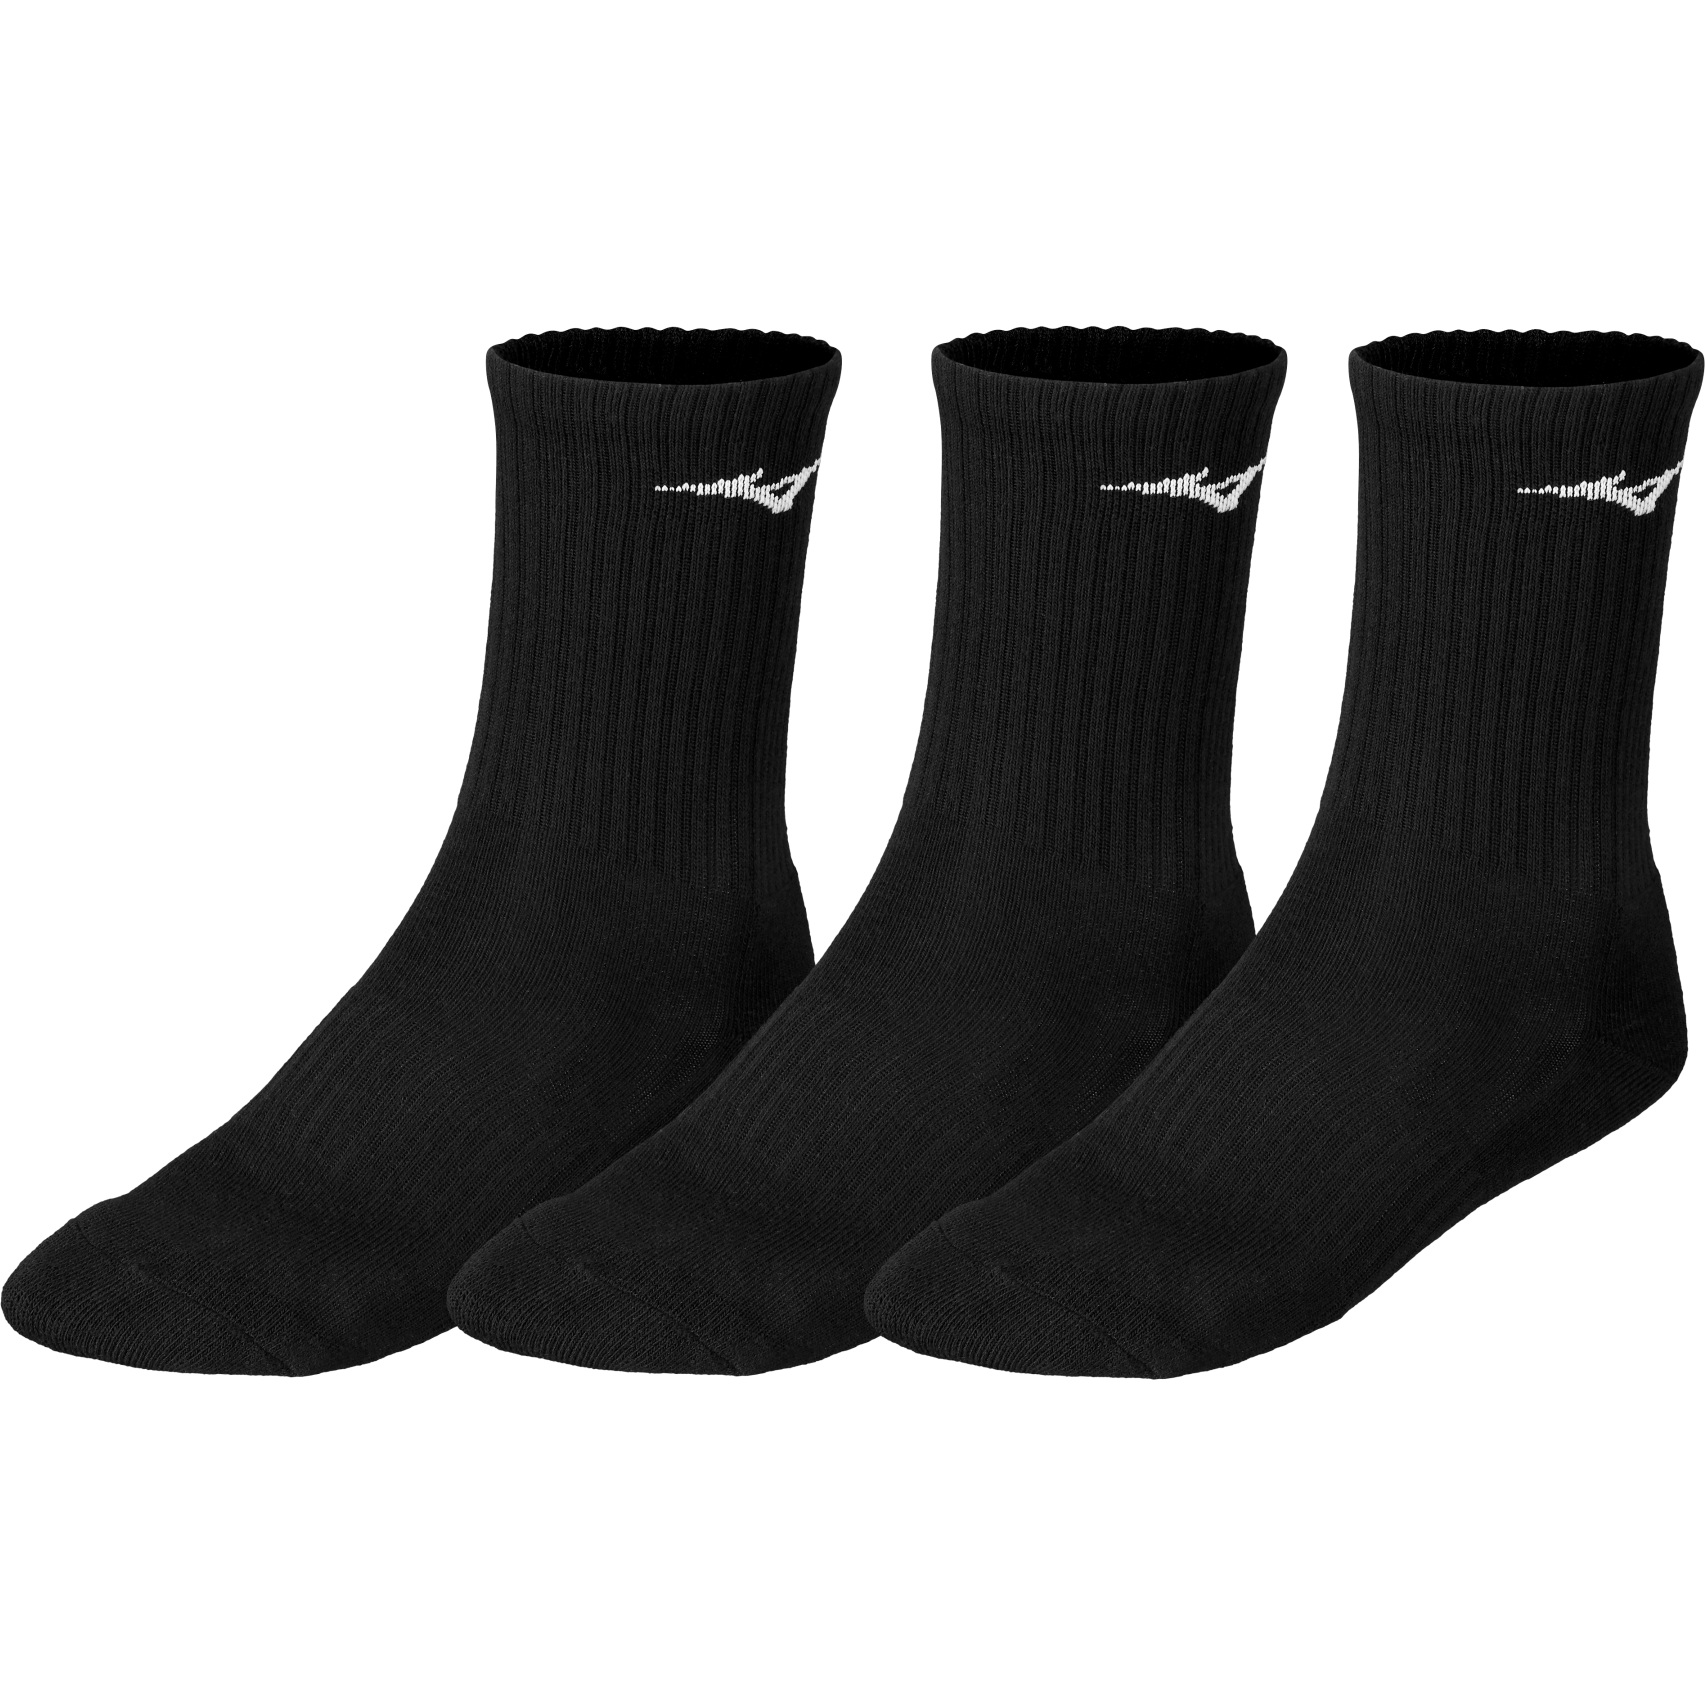 Produktbild von Mizuno Training Socken 3er Pack - Schwarz / Schwarz / Schwarz